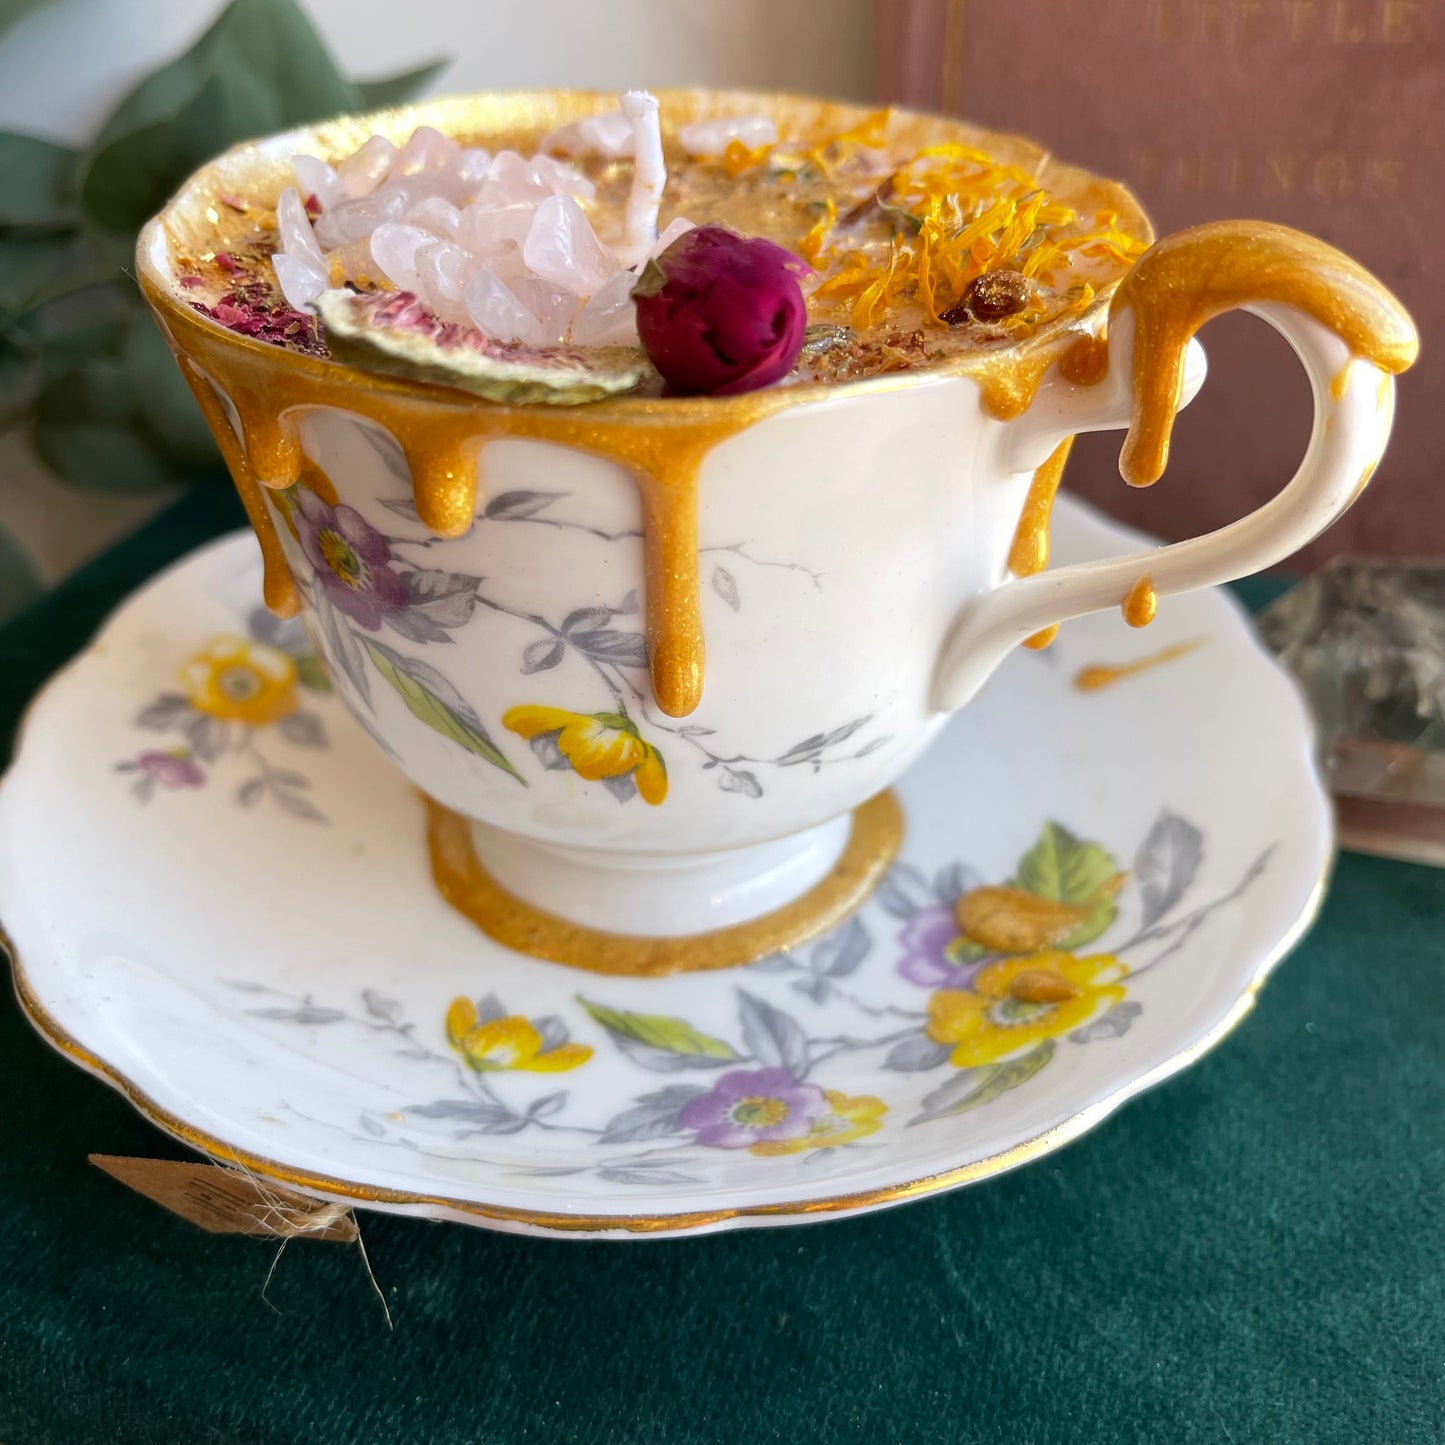 Teacup Candle - 11:11 scent - soft feminine floral fragrance